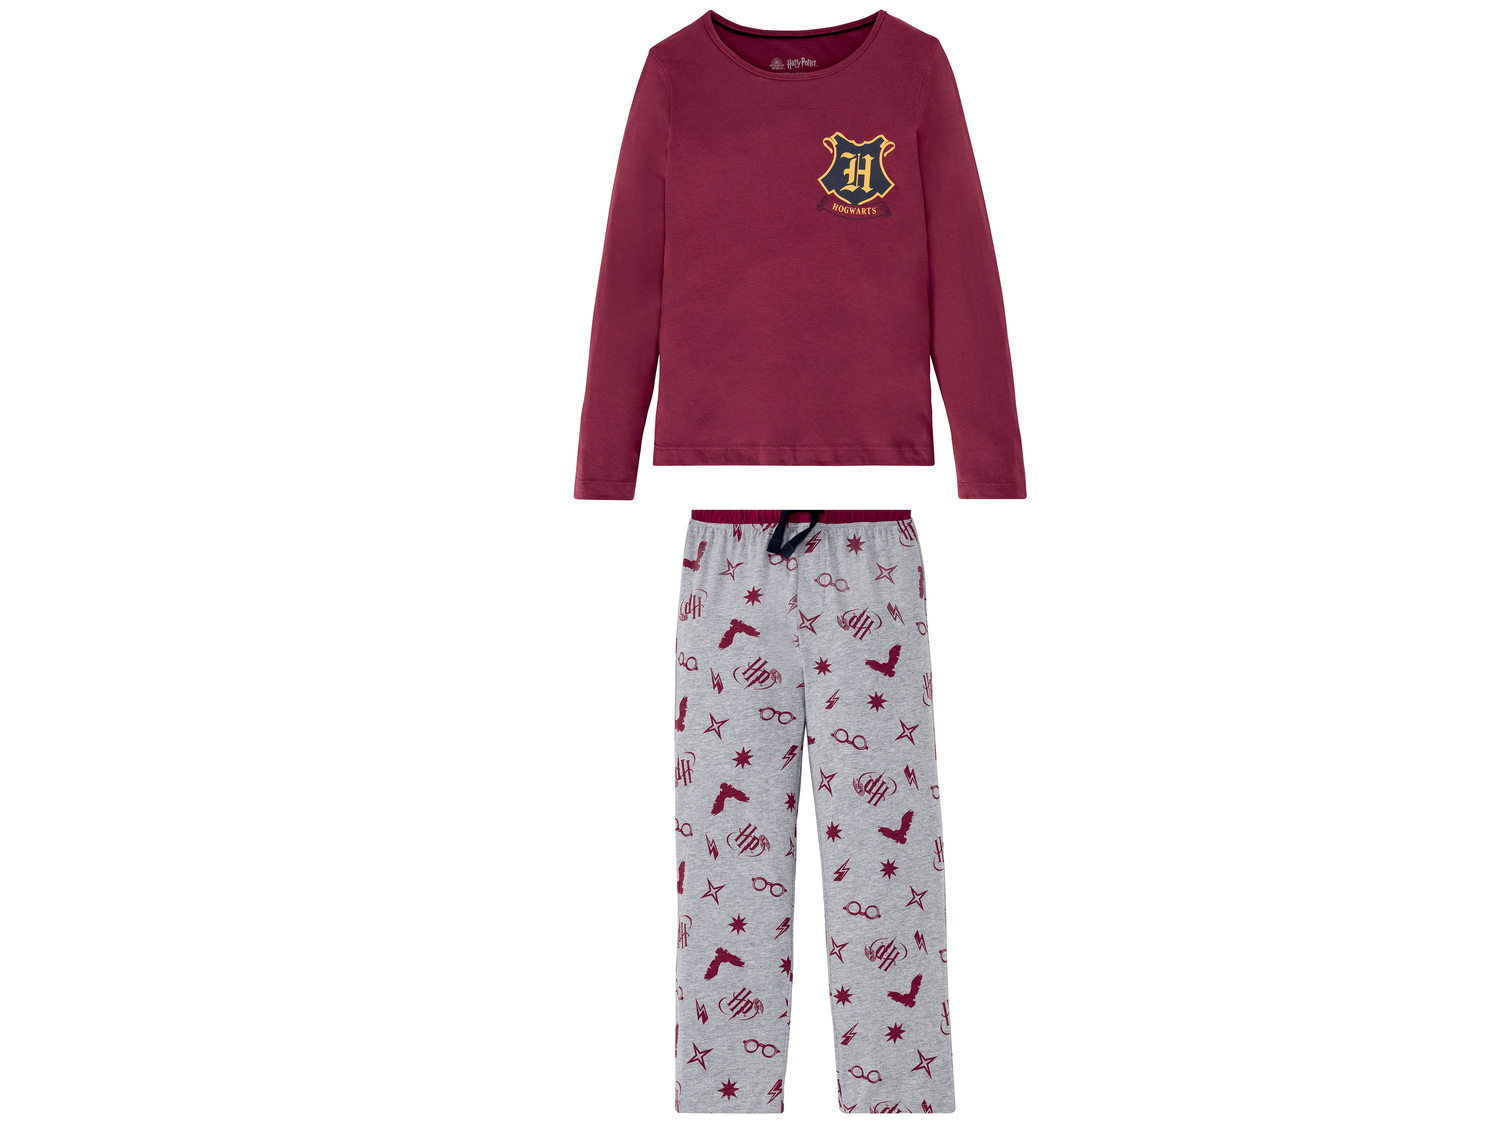 Pyjama enfant , le prix 6.99 &#8364; 
- Du 6-8 ans au 12-14 ans selon mod&egrave;le.
- ...